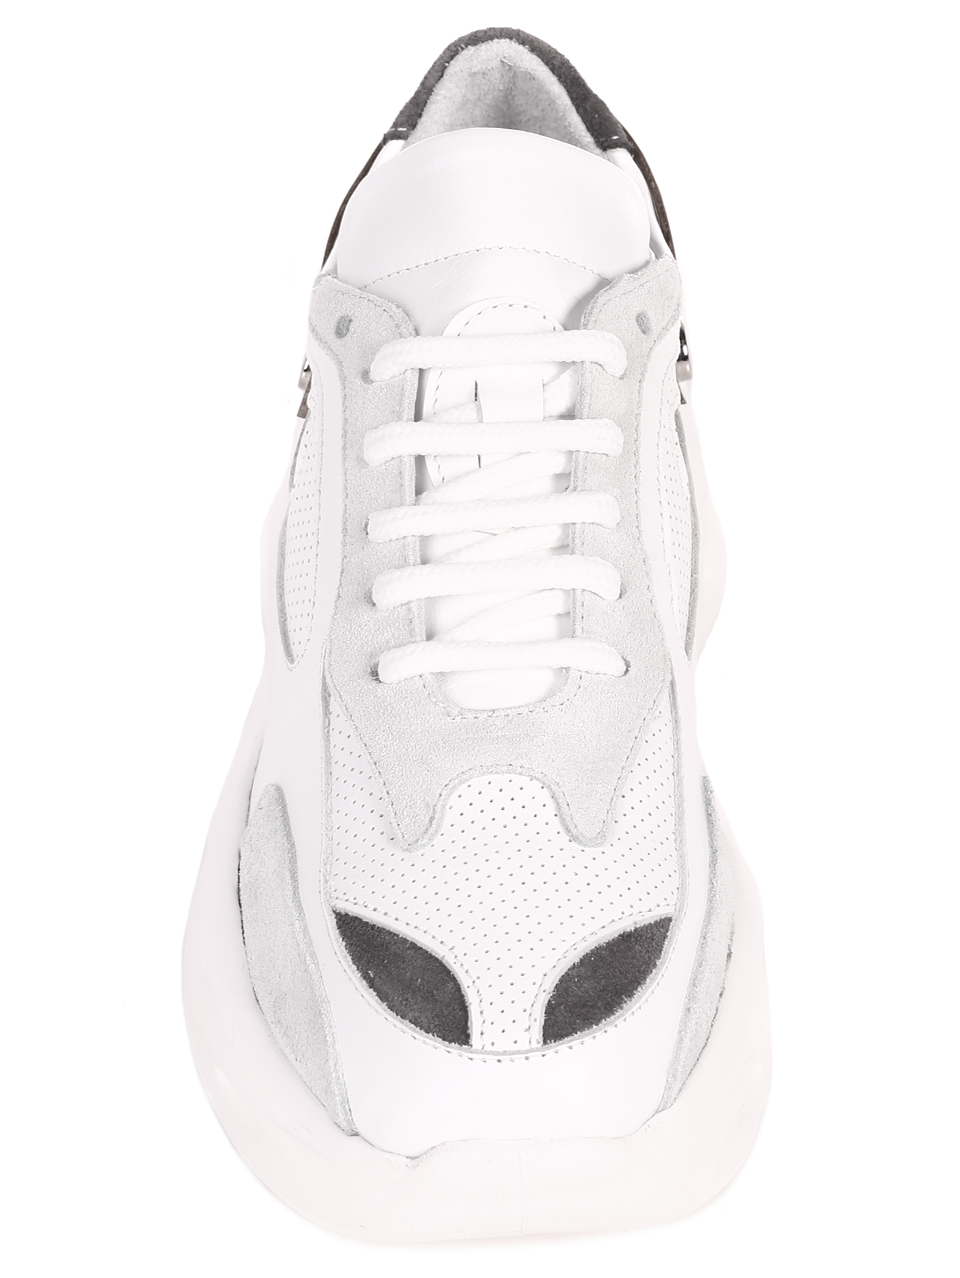 Ежедневни дамски комфортни обувки от естествена кожа в бяло 3AT-22317 white